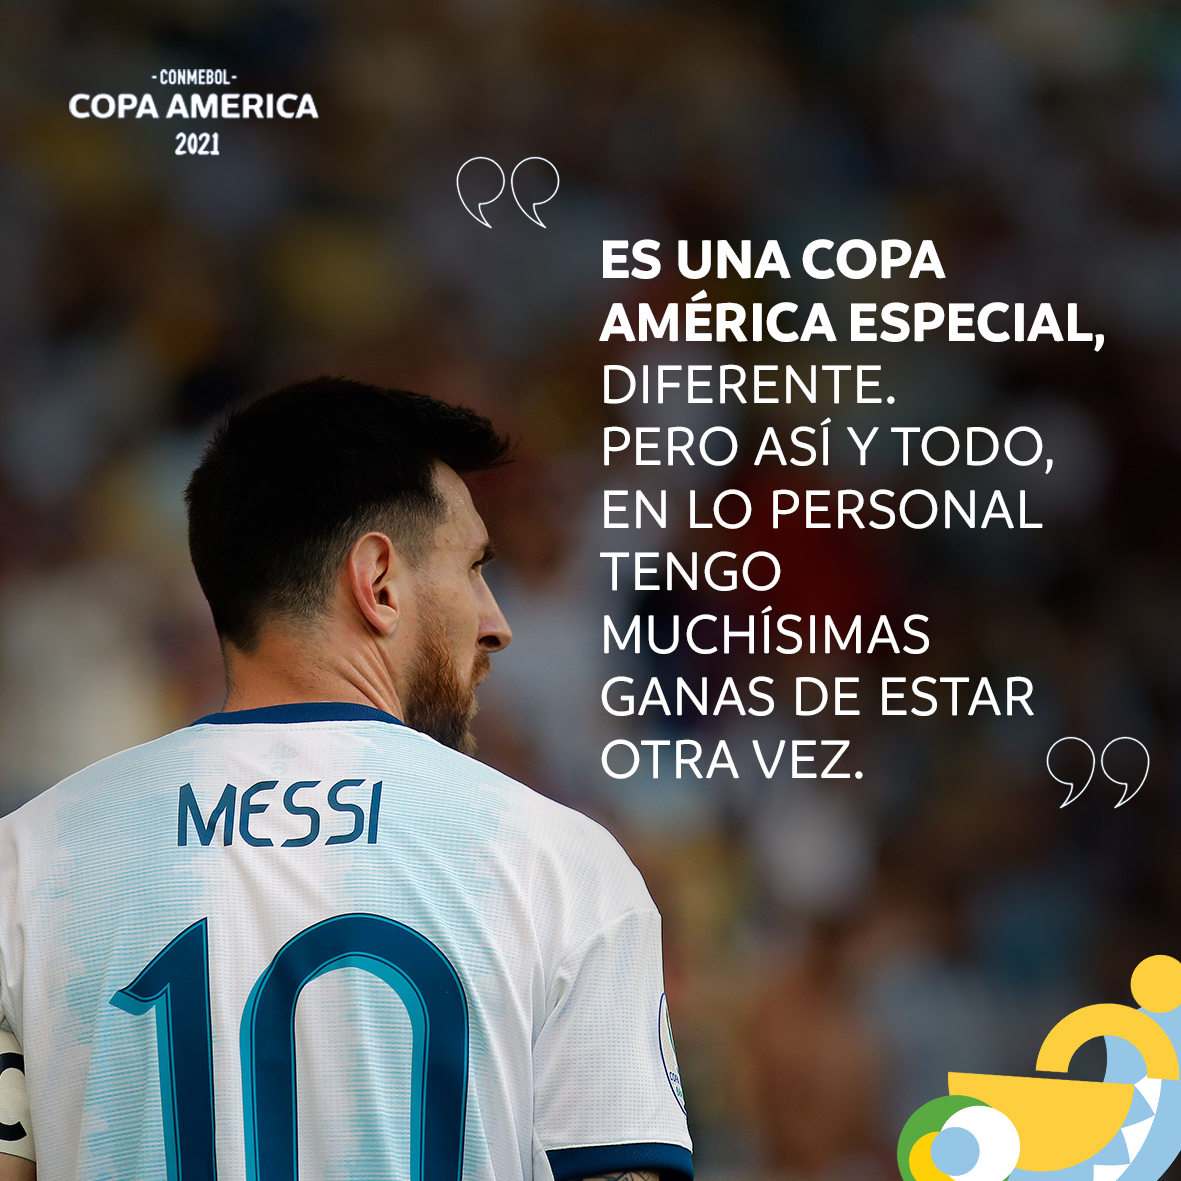 تويتر \ Copa América على تويتر: 